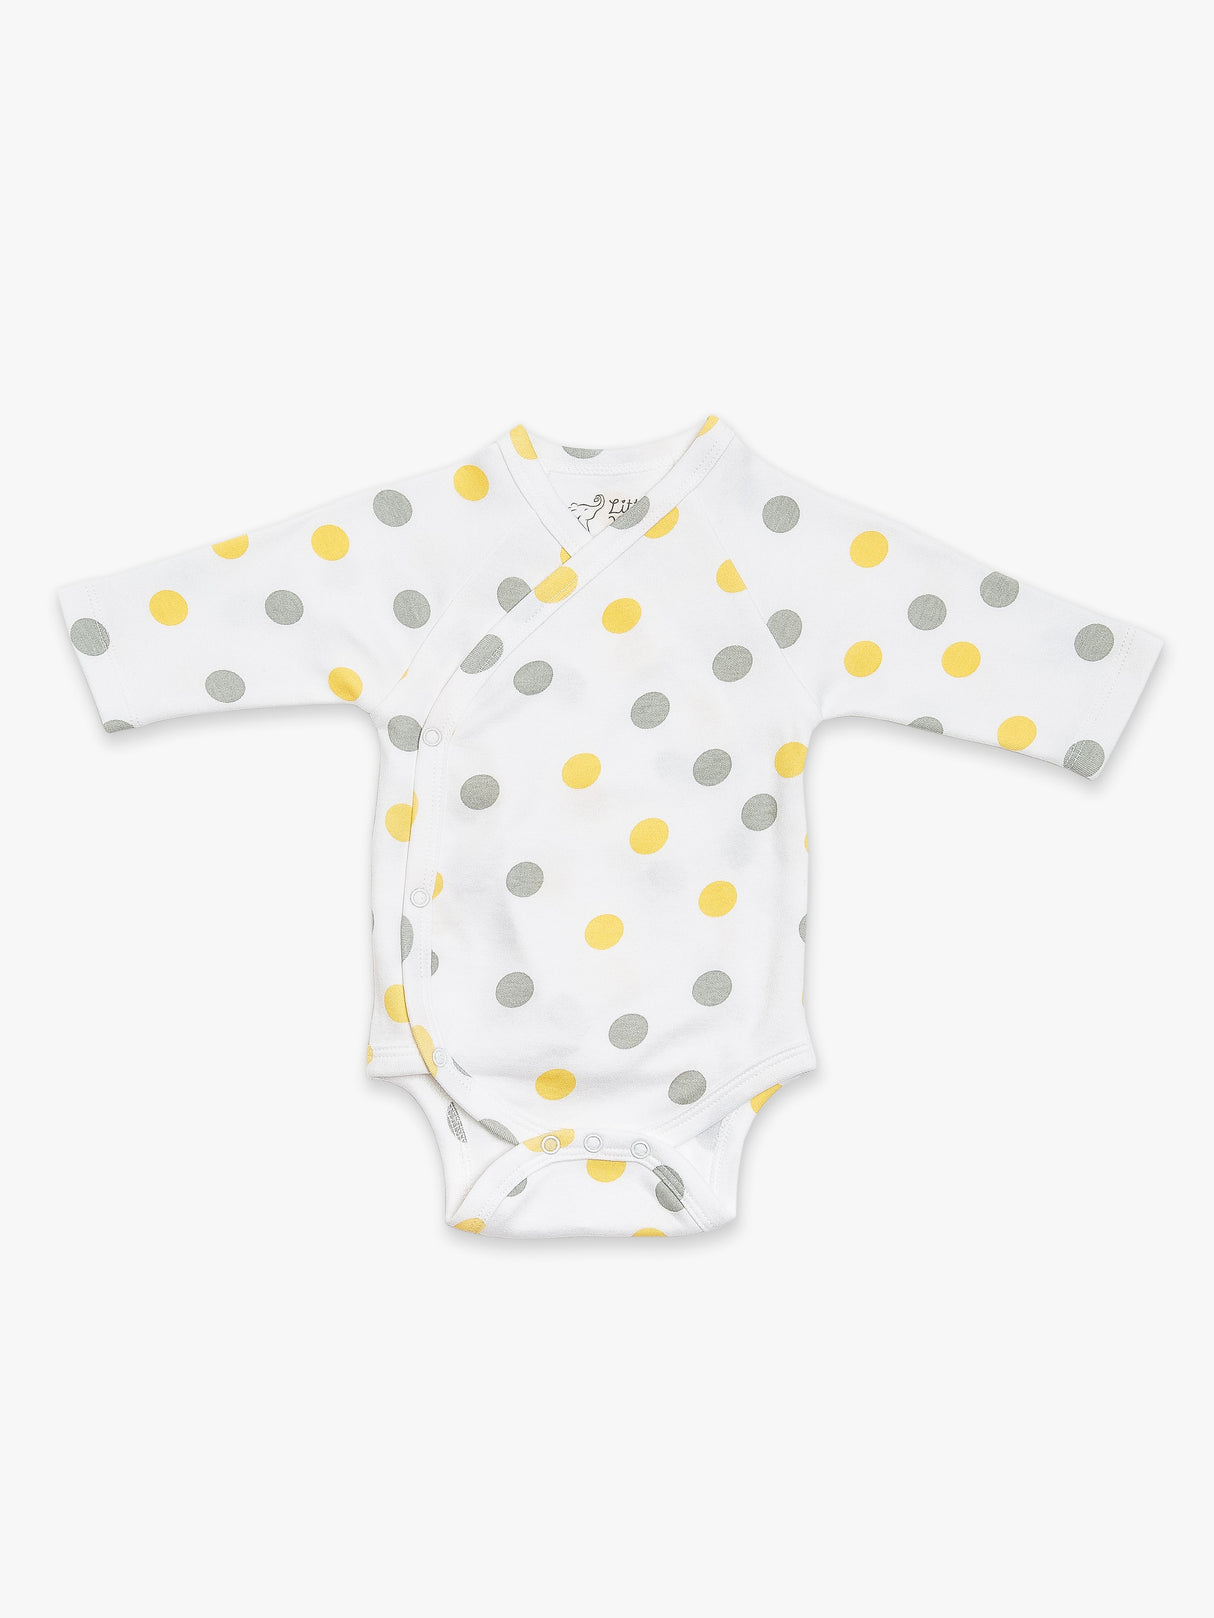 Organic Cotton Kimono Bodysuit - Yellow & Gray Polka dots by Little Moy